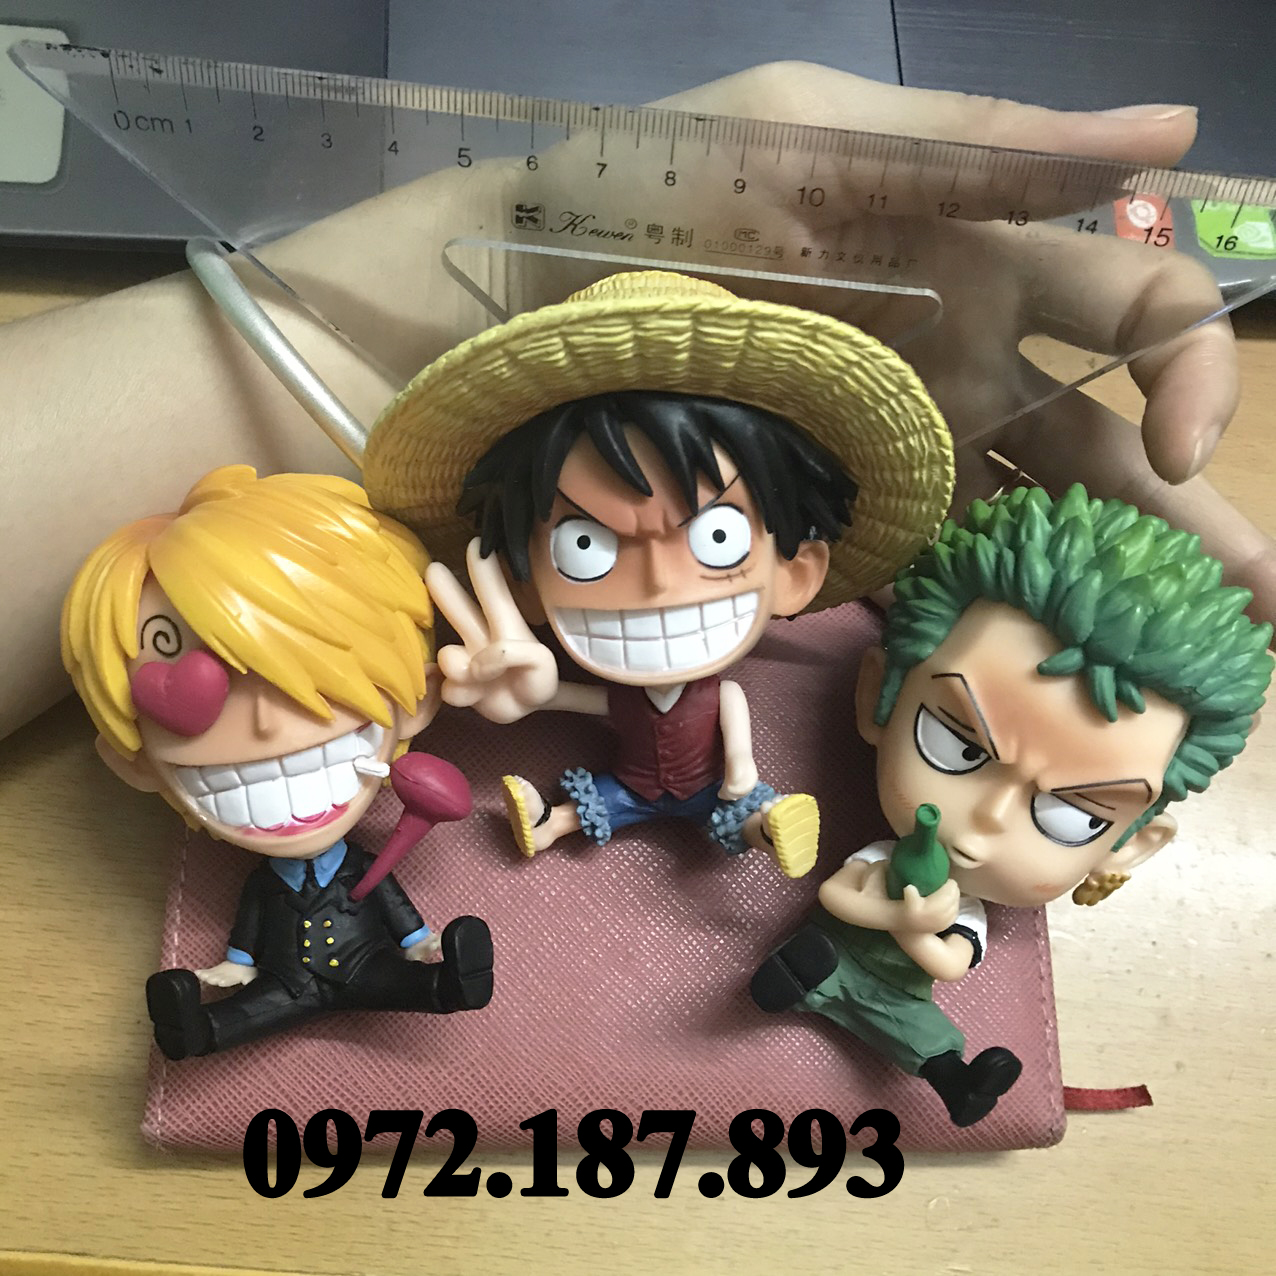 Giá Bộ 3 mô hình: Bạn yêu thích One Piece? Bạn muốn sở hữu bộ 3 mô hình nhân vật đáng yêu trong siêu phẩm anime One Piece? Hãy xem ngay hình ảnh bộ 3 mô hình này để cảm nhận sự đáng yêu và phấn khích.